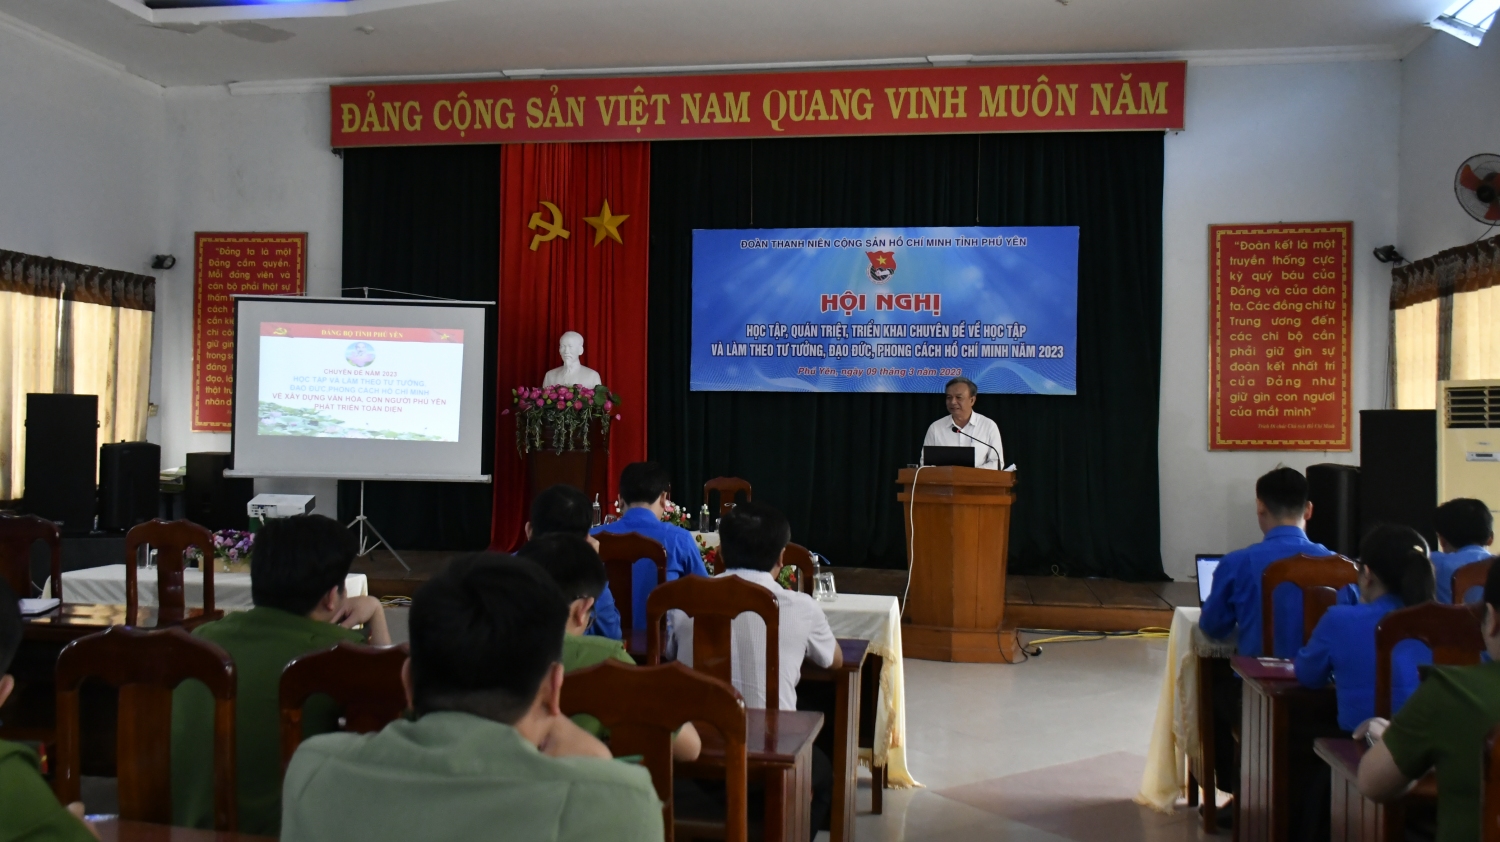 Đồng chí Nguyễn Văn Sự - Phó Trưởng Ban trực Tuyên giáo Tỉnh ủy Phú Yên quán triệt các nội dung chuyên đề học tập và làm theo tư tưởng, đạo đức, phong cách Hồ Chí Minh năm 2023.